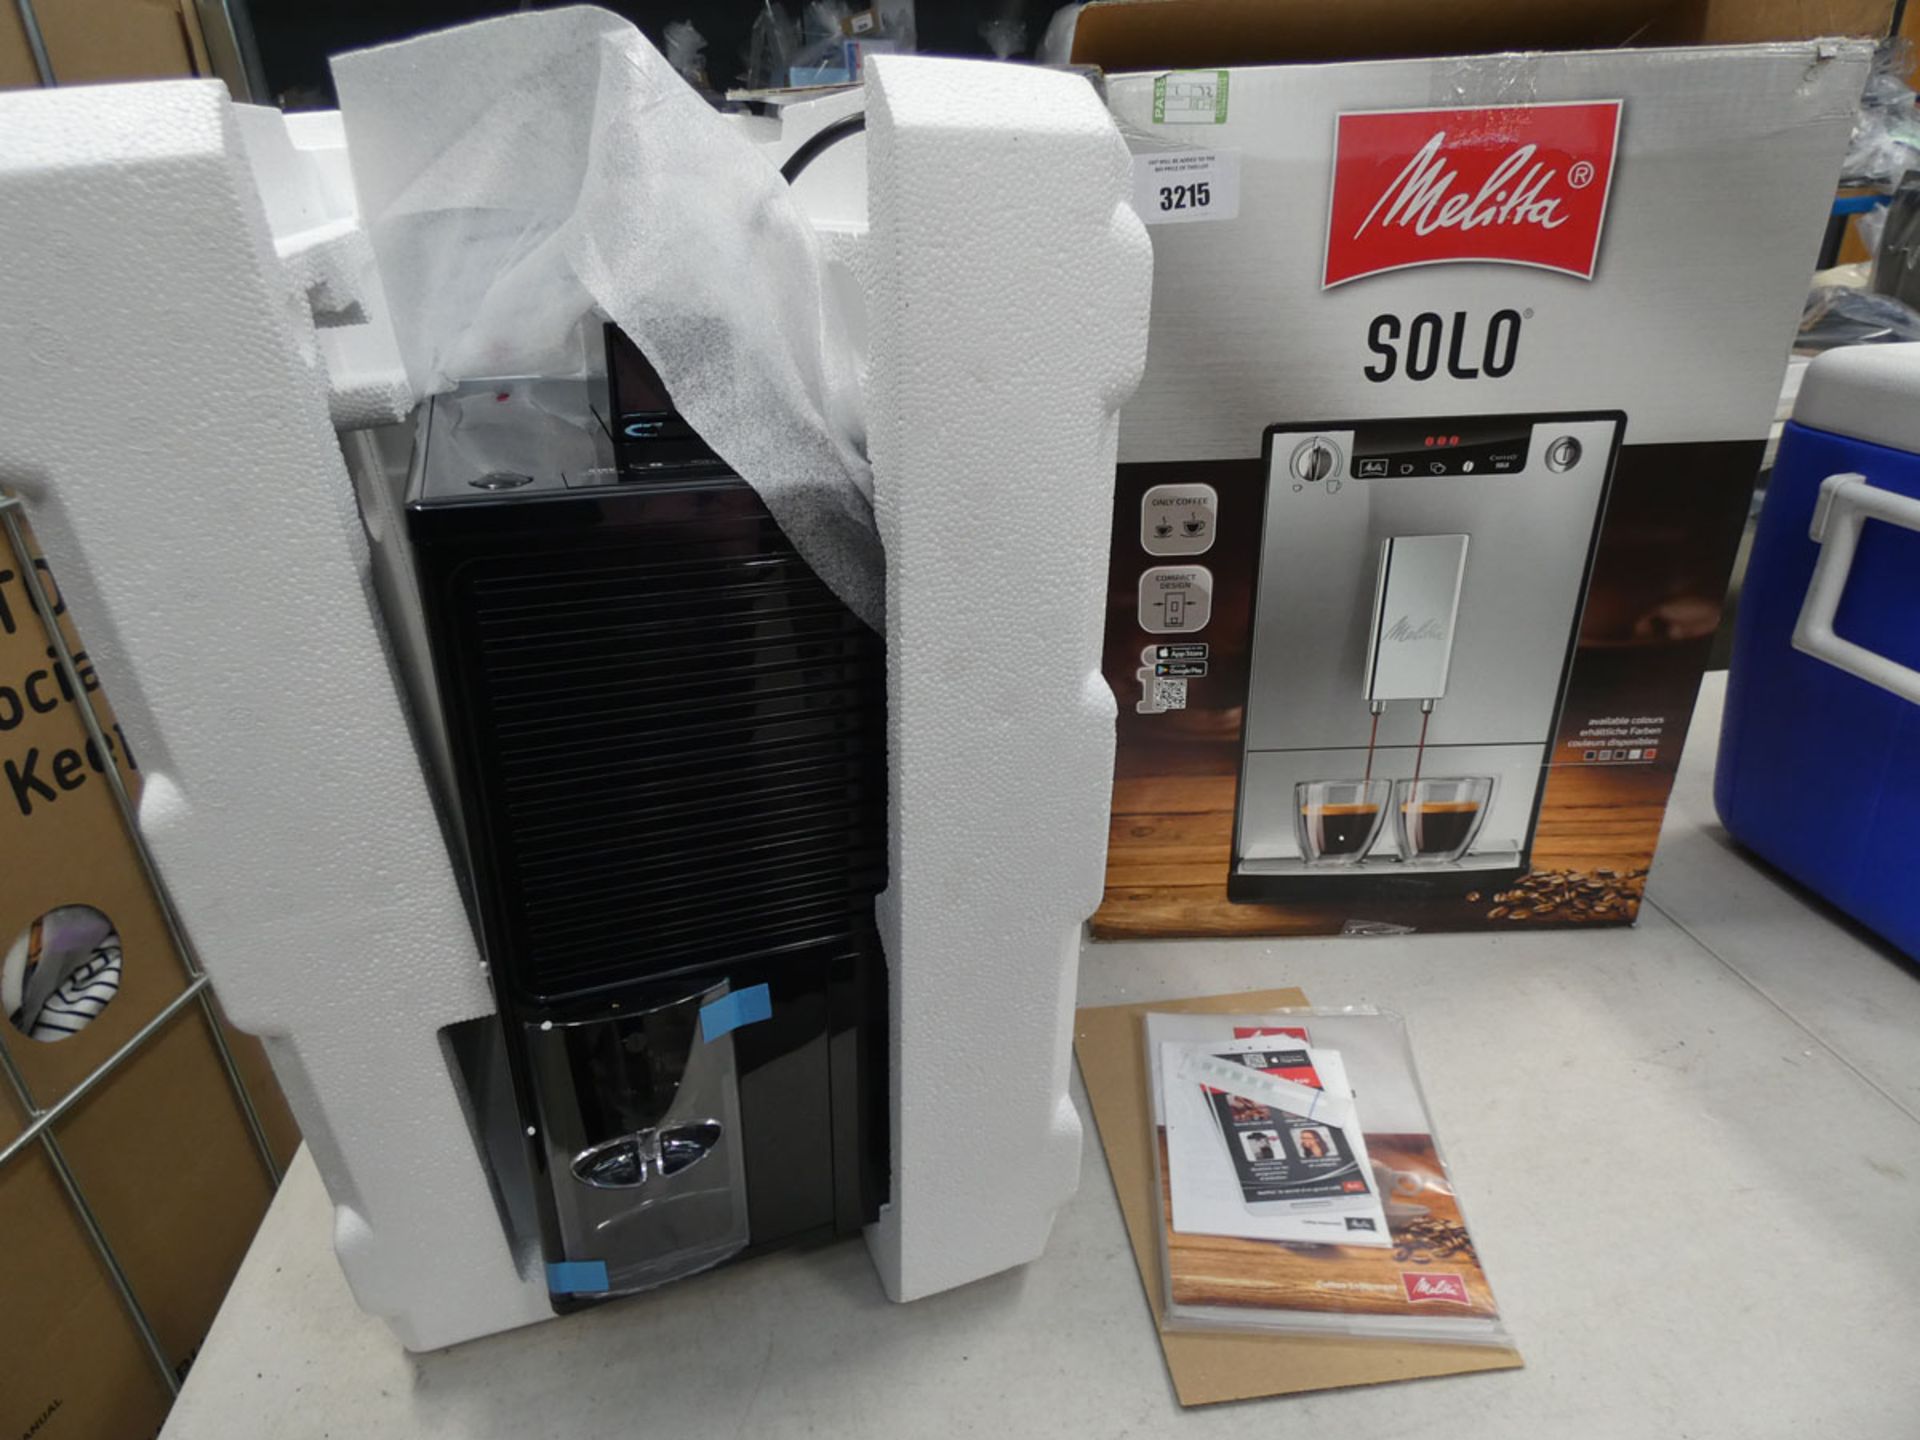 (TN72) Boxed De'Longhi Miletta Solo coffee machine